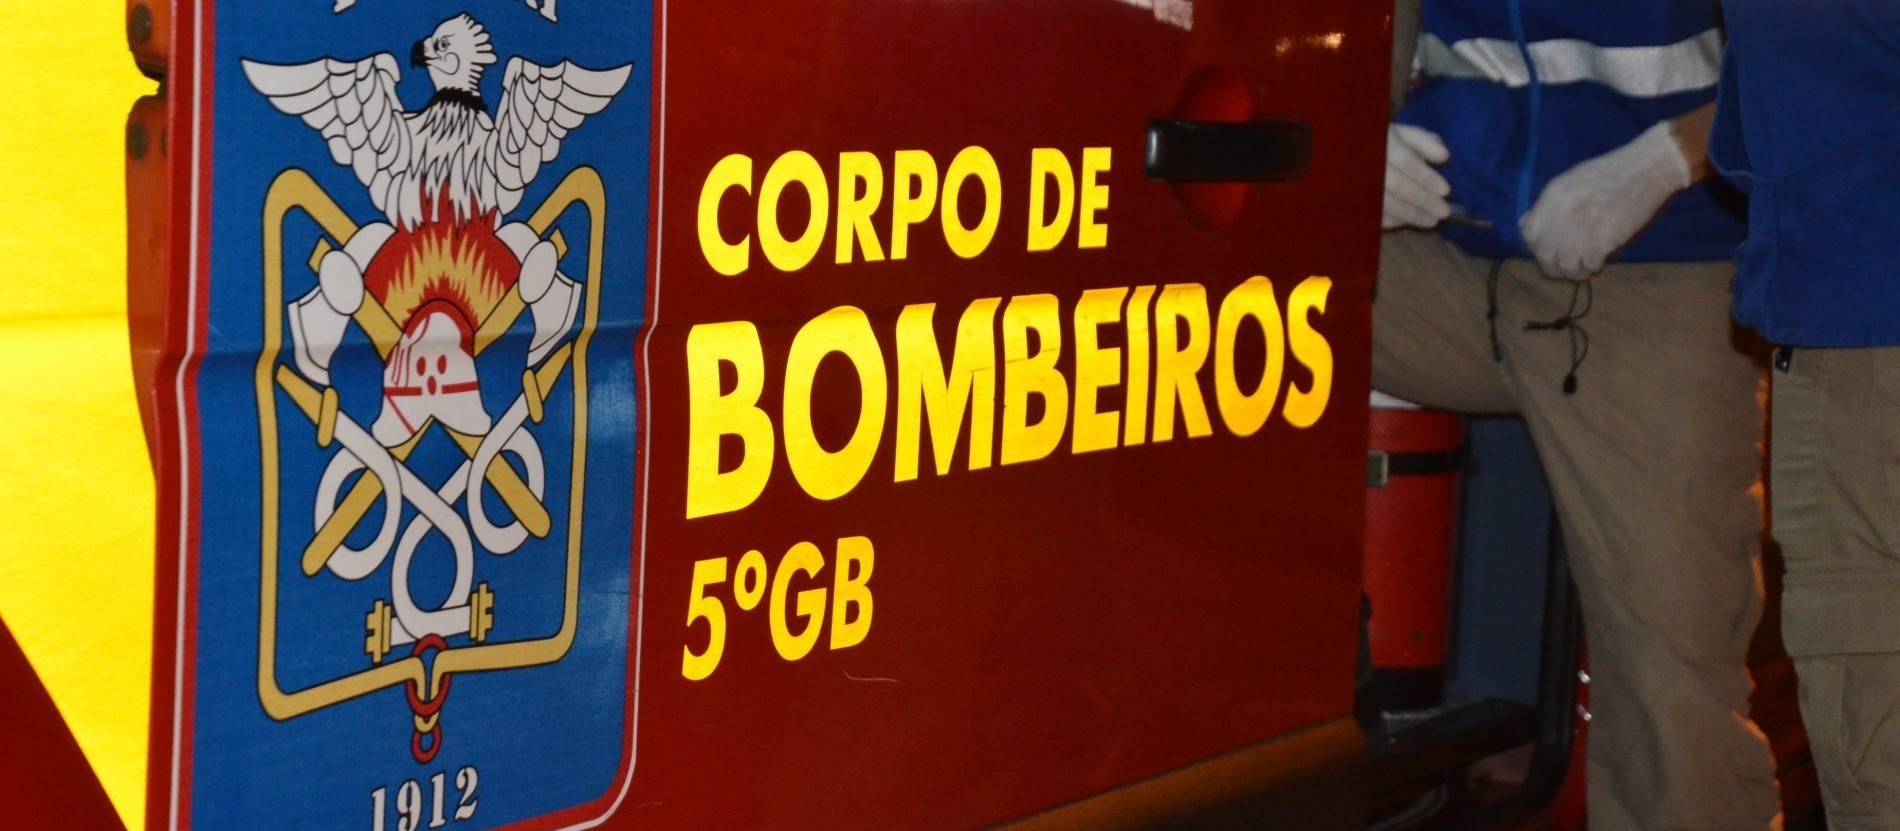 Corpo de Bombeiros alerta sobre golpe que usa nome da corporação